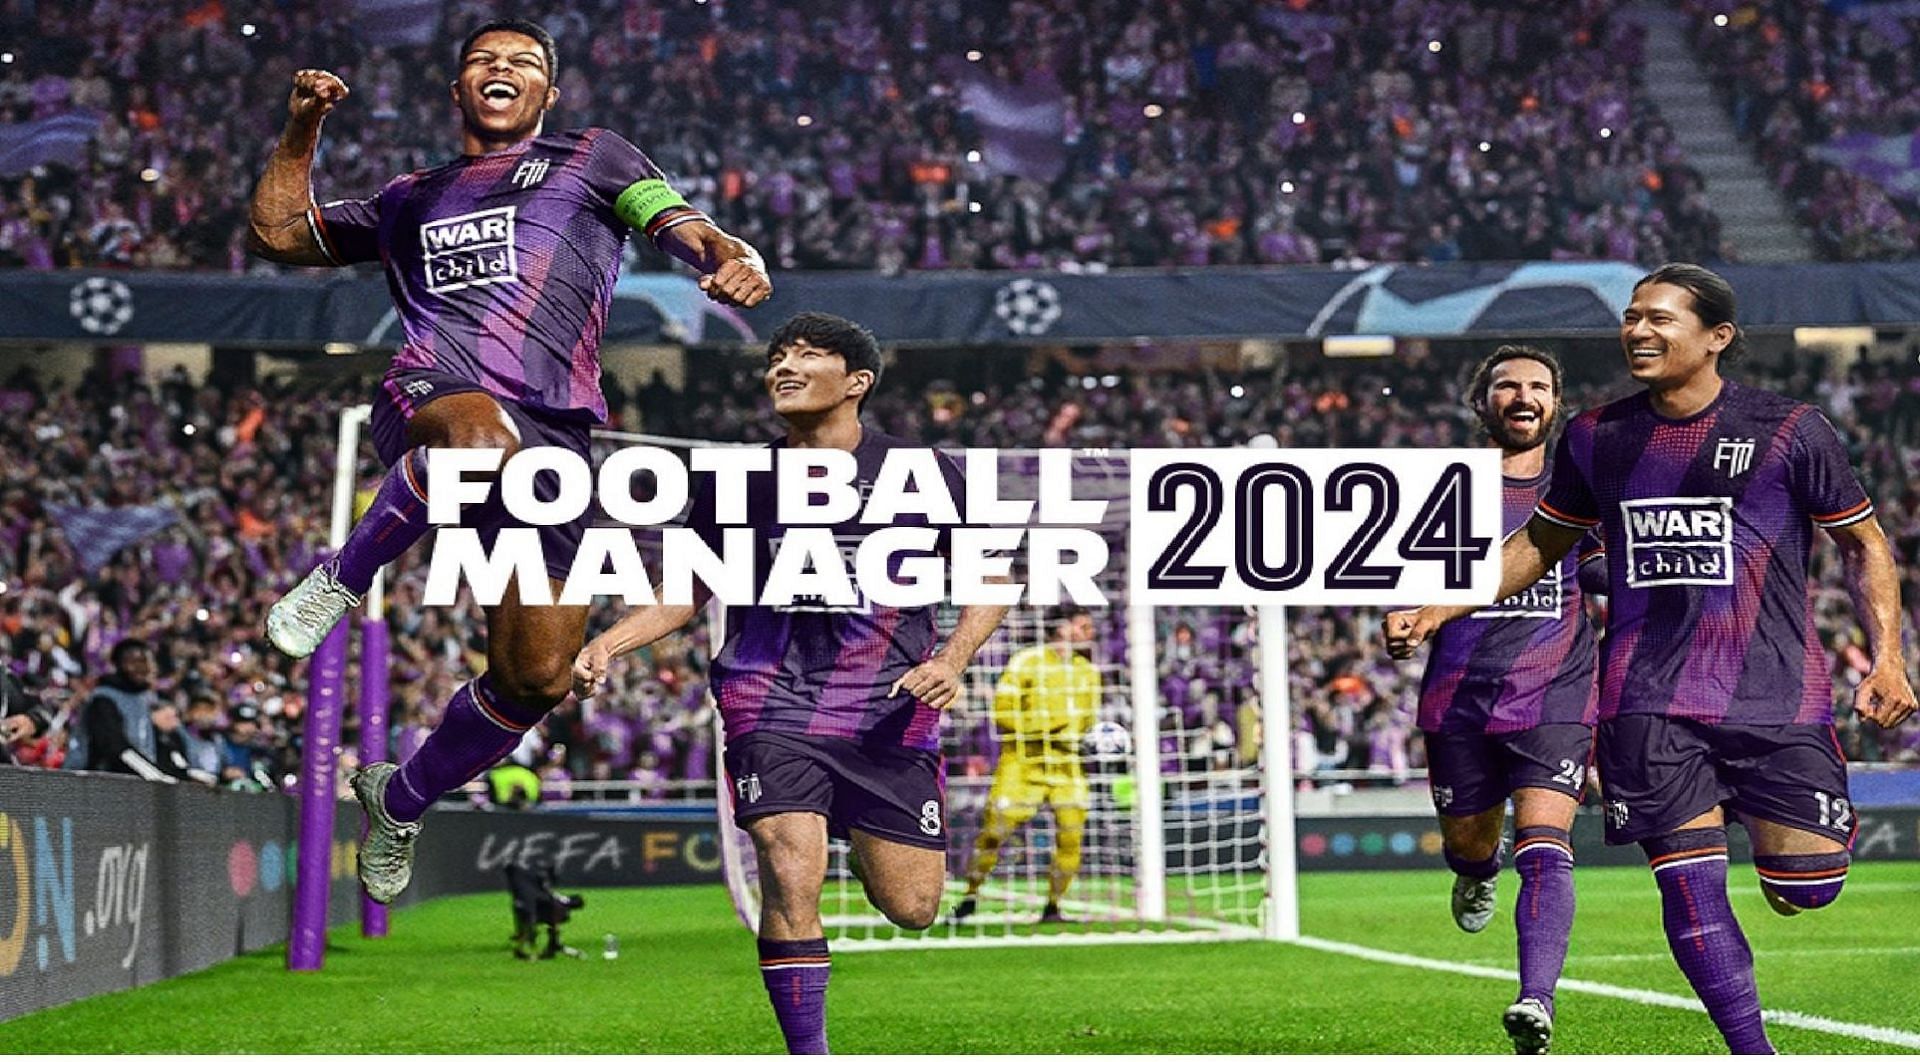 eFootball 2024 - ANNOUNCEMENT, BUNDESLEAGUE, CROSS-PLATFORM 